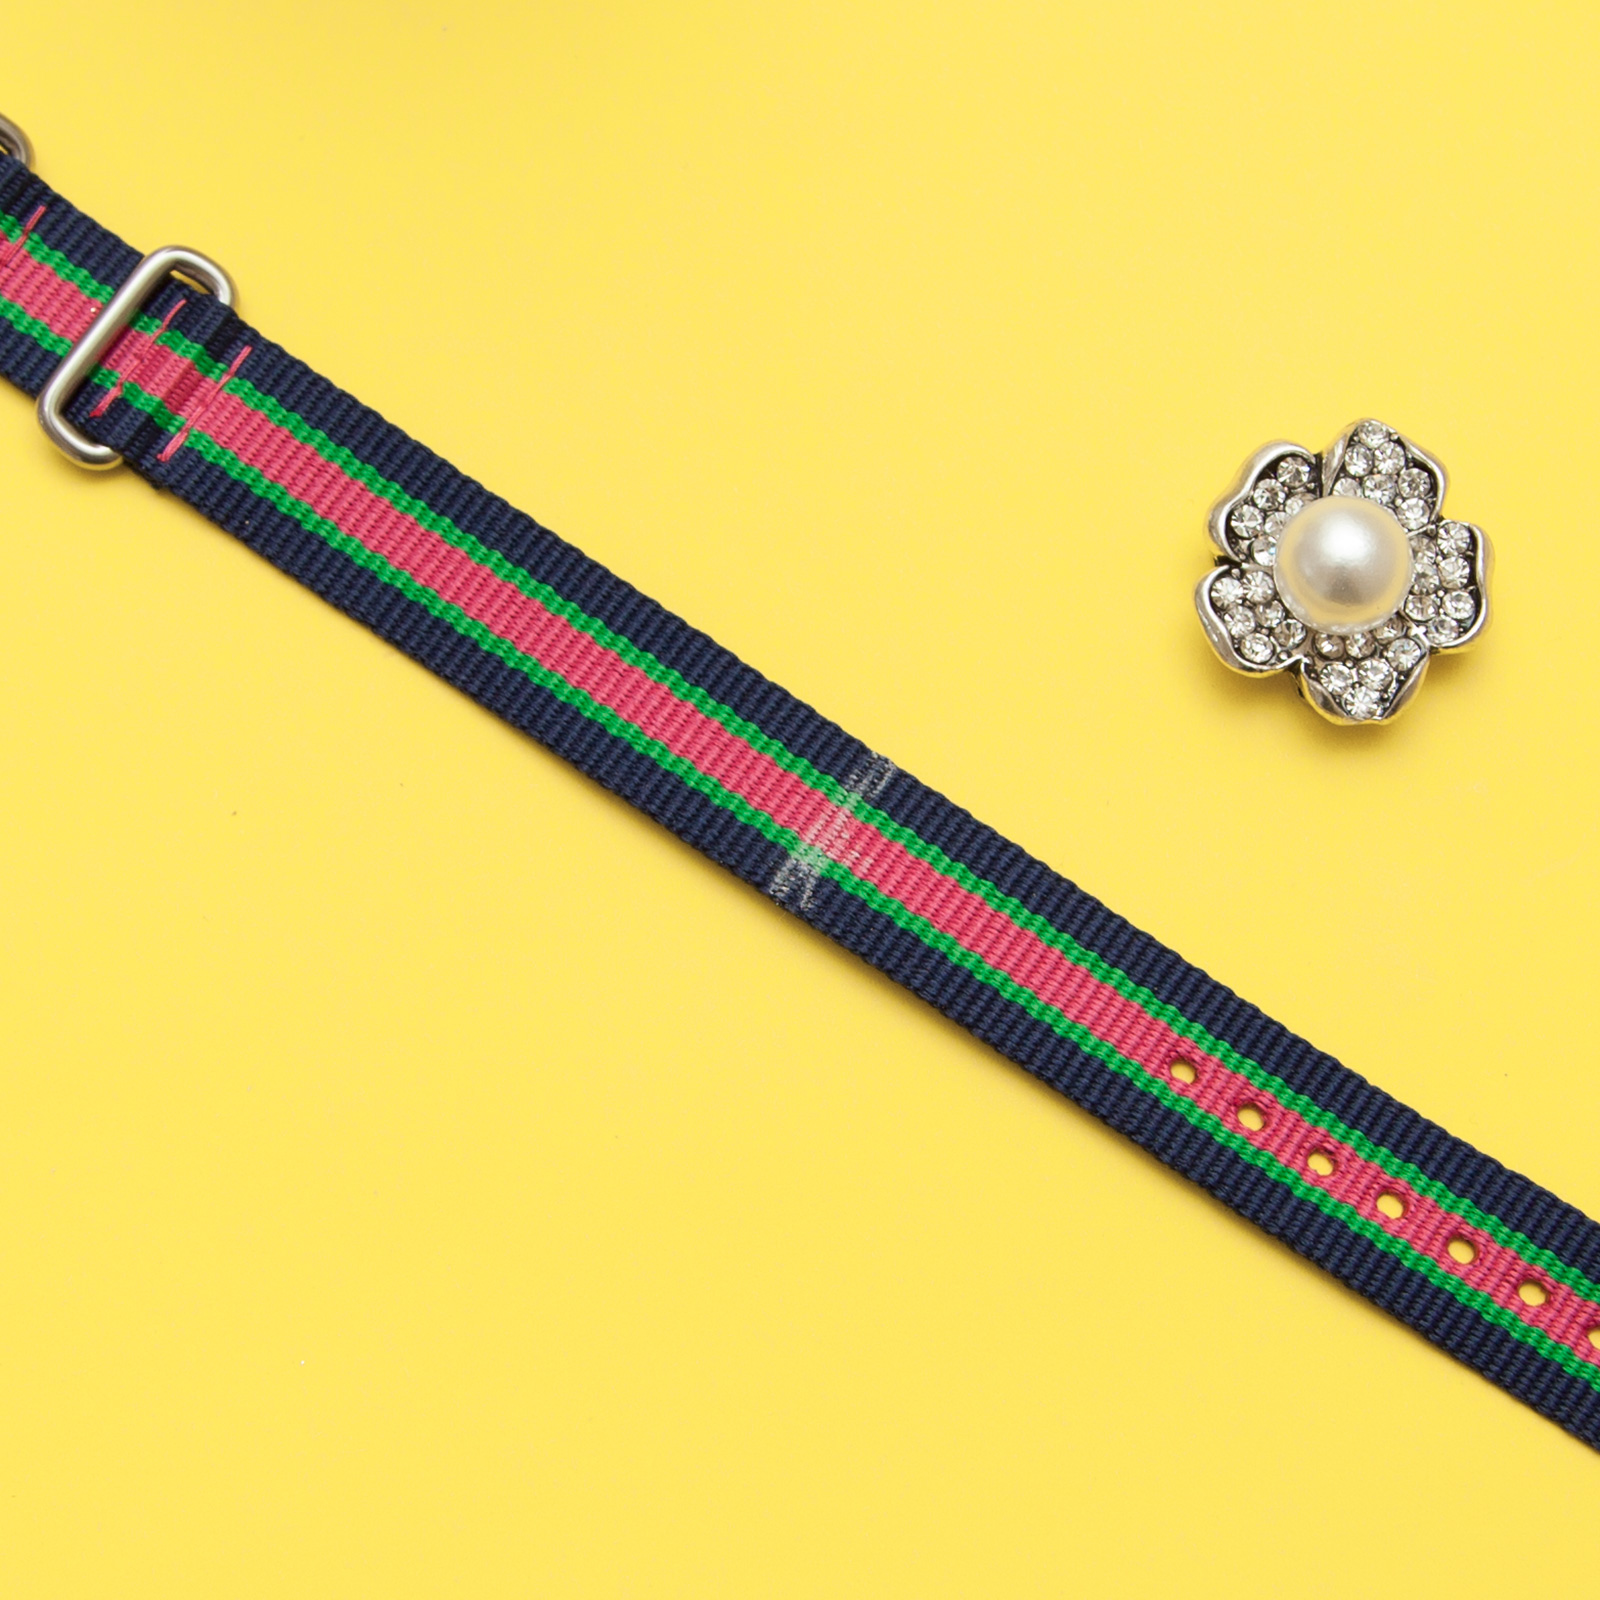 Watch Strap Rhinestone Bracelet DIY add jewel by Trinkets in Bloom